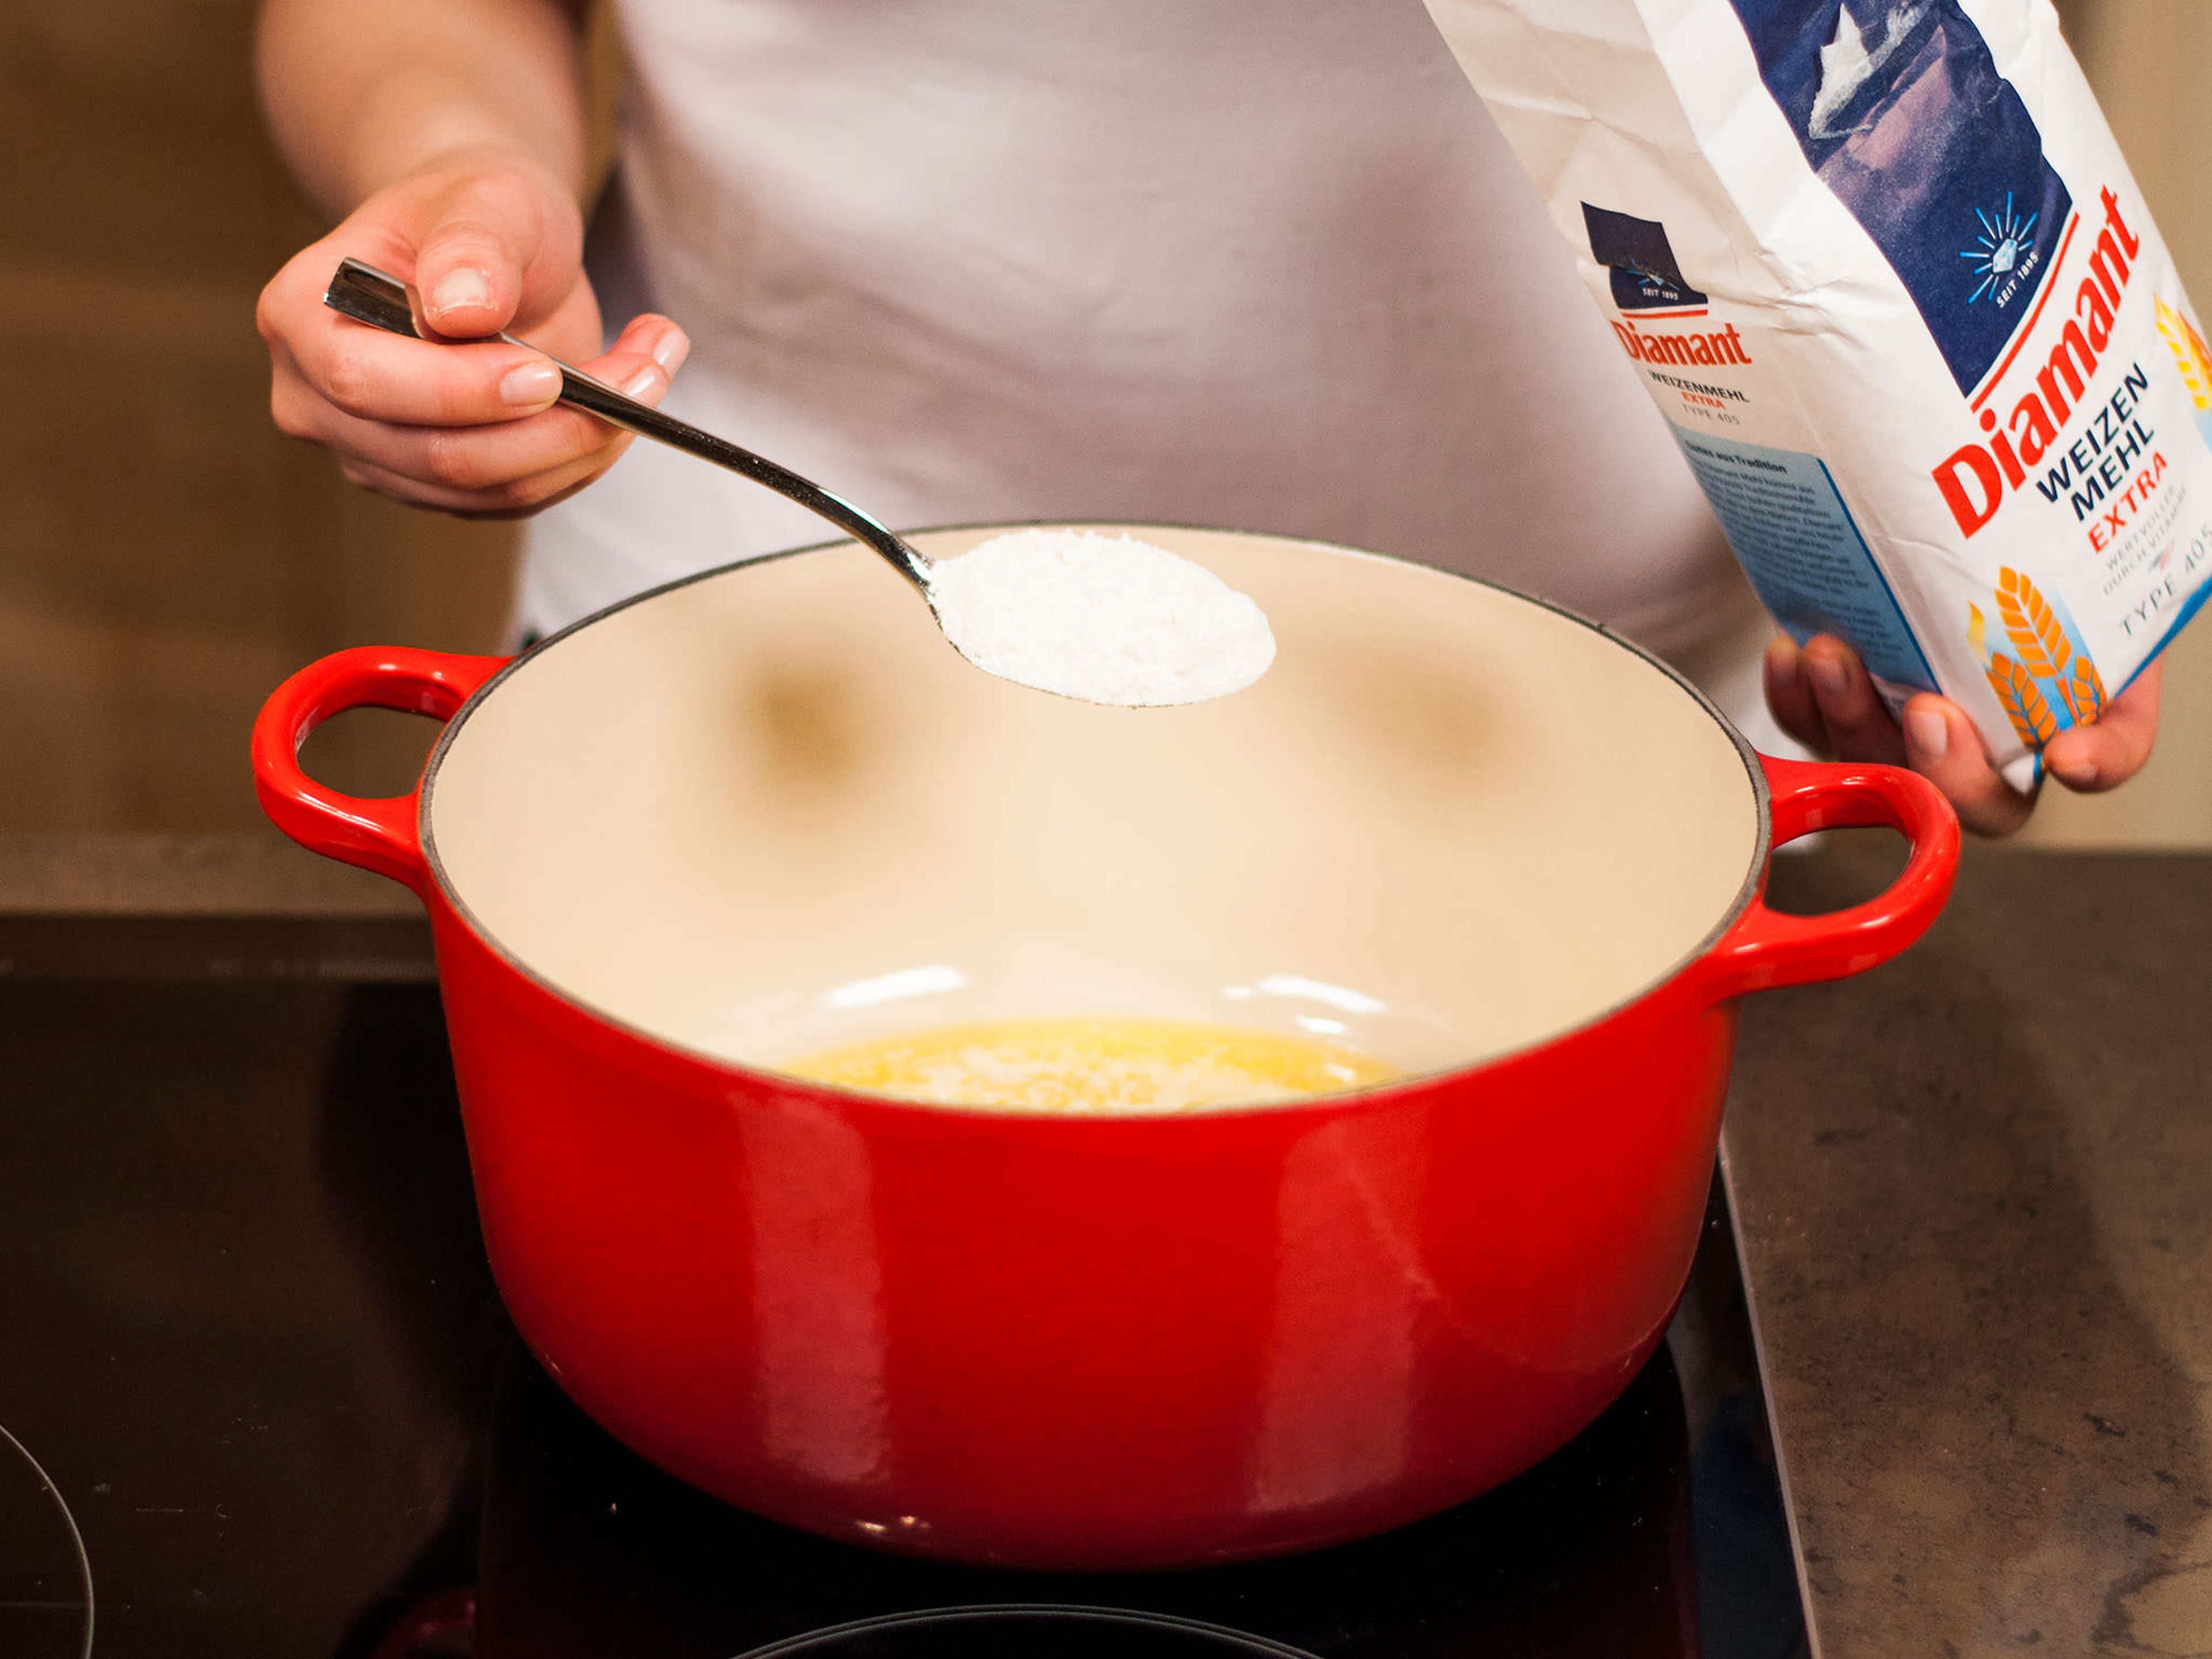 Den Ofen auf 200°C für die Lasagne vorheizen. Für die Béchamelsoße, die Butter in einem kleinen Topf schmelzen. Mehl dazugeben und unter Rühren anrösten.